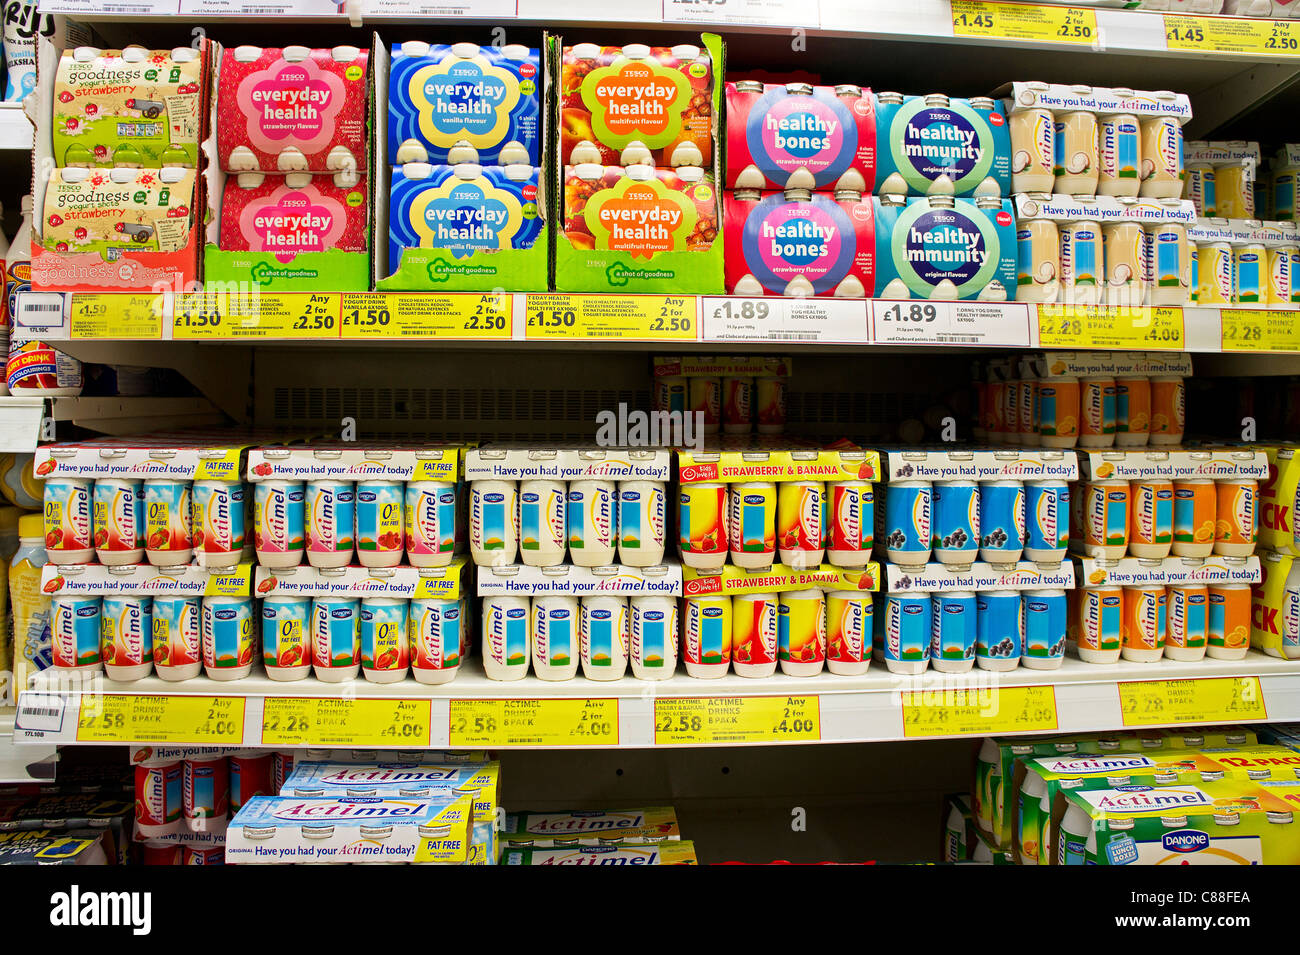 Probiotico e bevande per la salute in un supermercato Tesco, Regno Unito Foto Stock